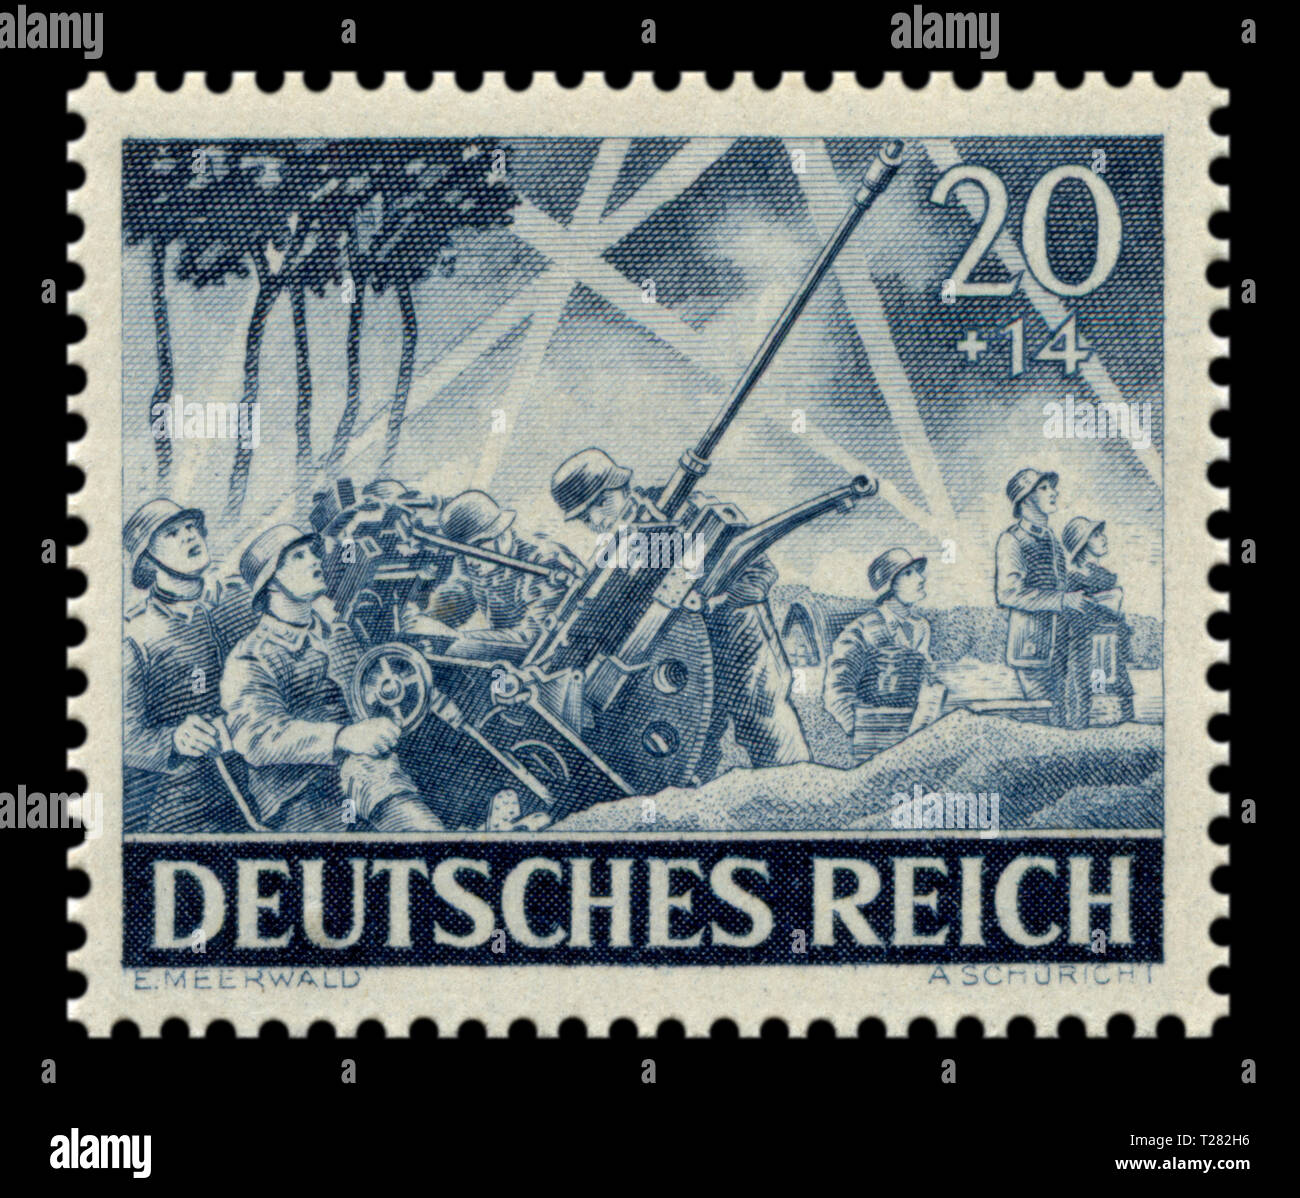 Historique allemand stamp : pistolet automatique Flak-30 light système d'artillerie anti-aérienne, la défense aérienne de la Wehrmacht, Memorial Day 1943 Question, Allemagne Banque D'Images